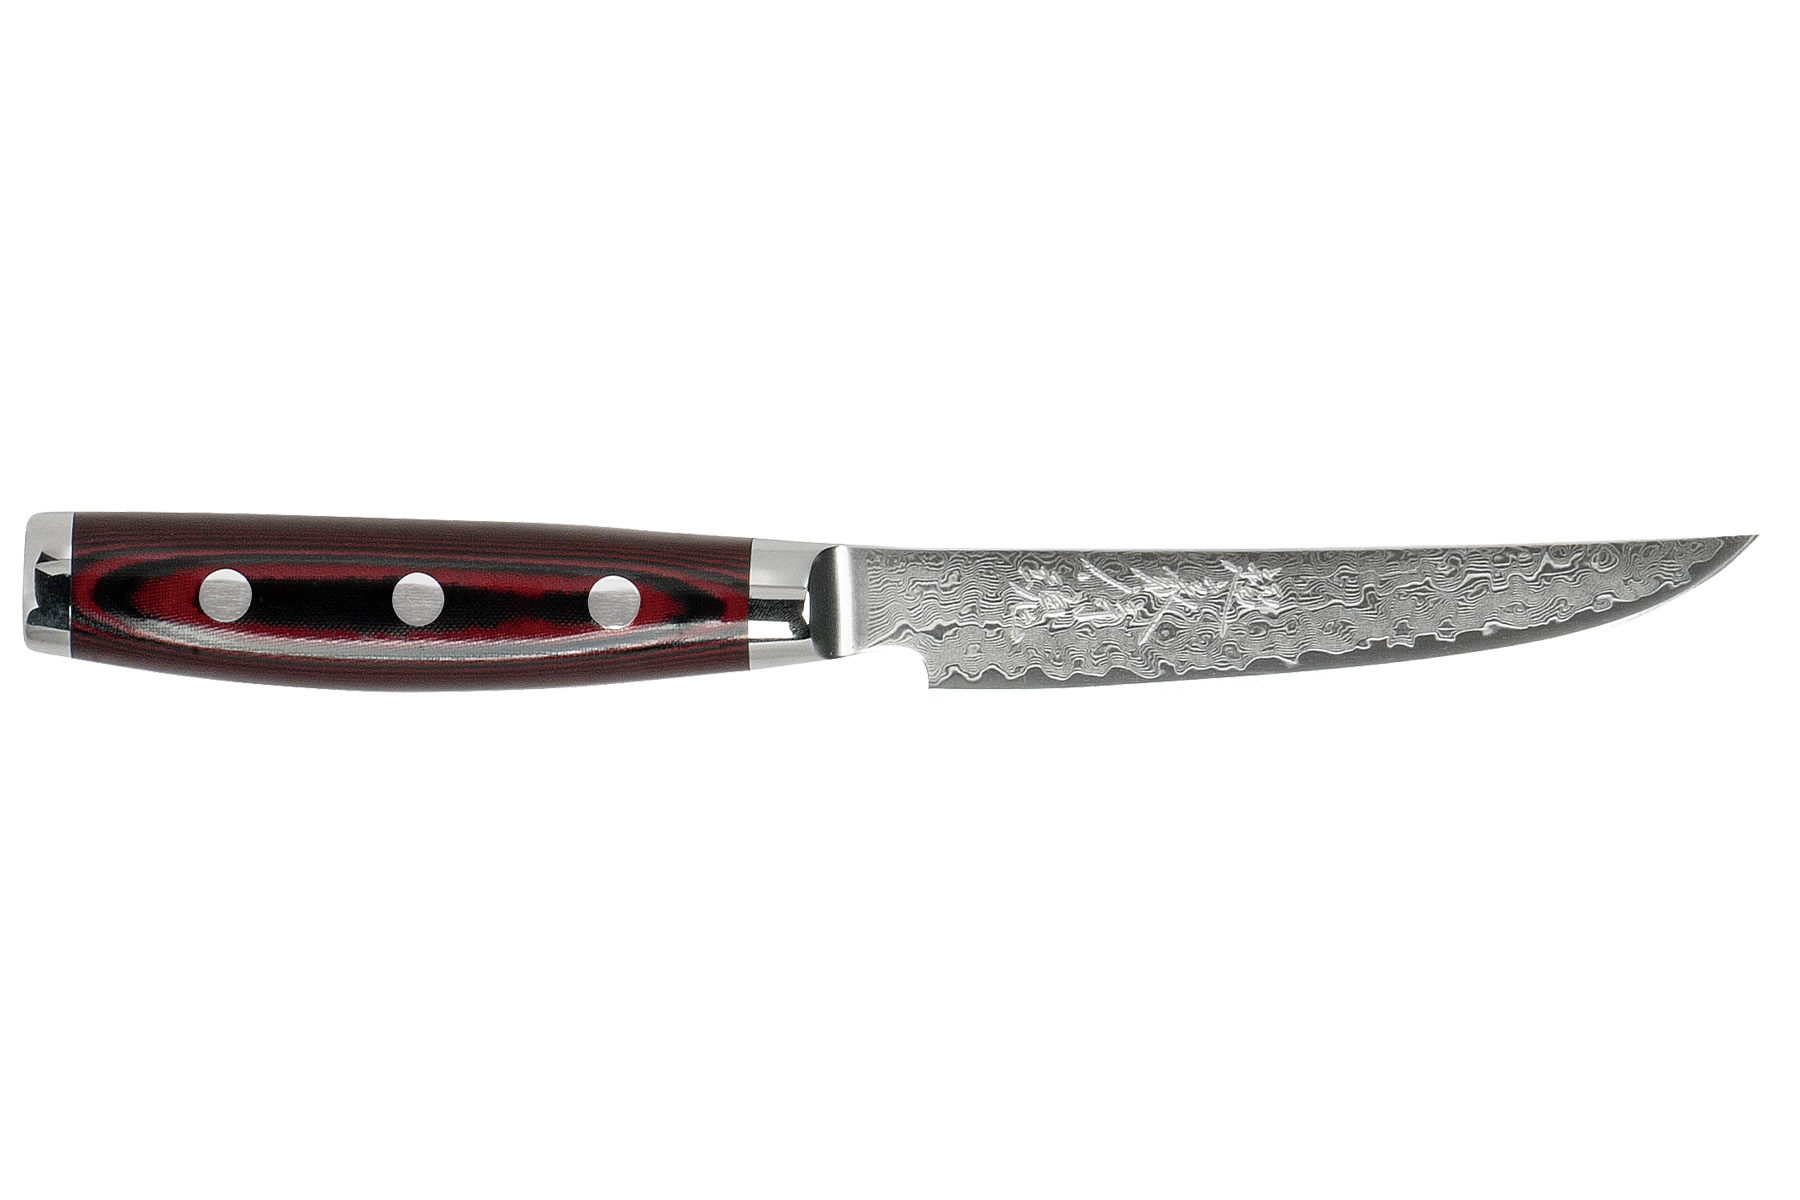 Couteau japonais Yaxell Ketu - Couteau à steak 11 cm